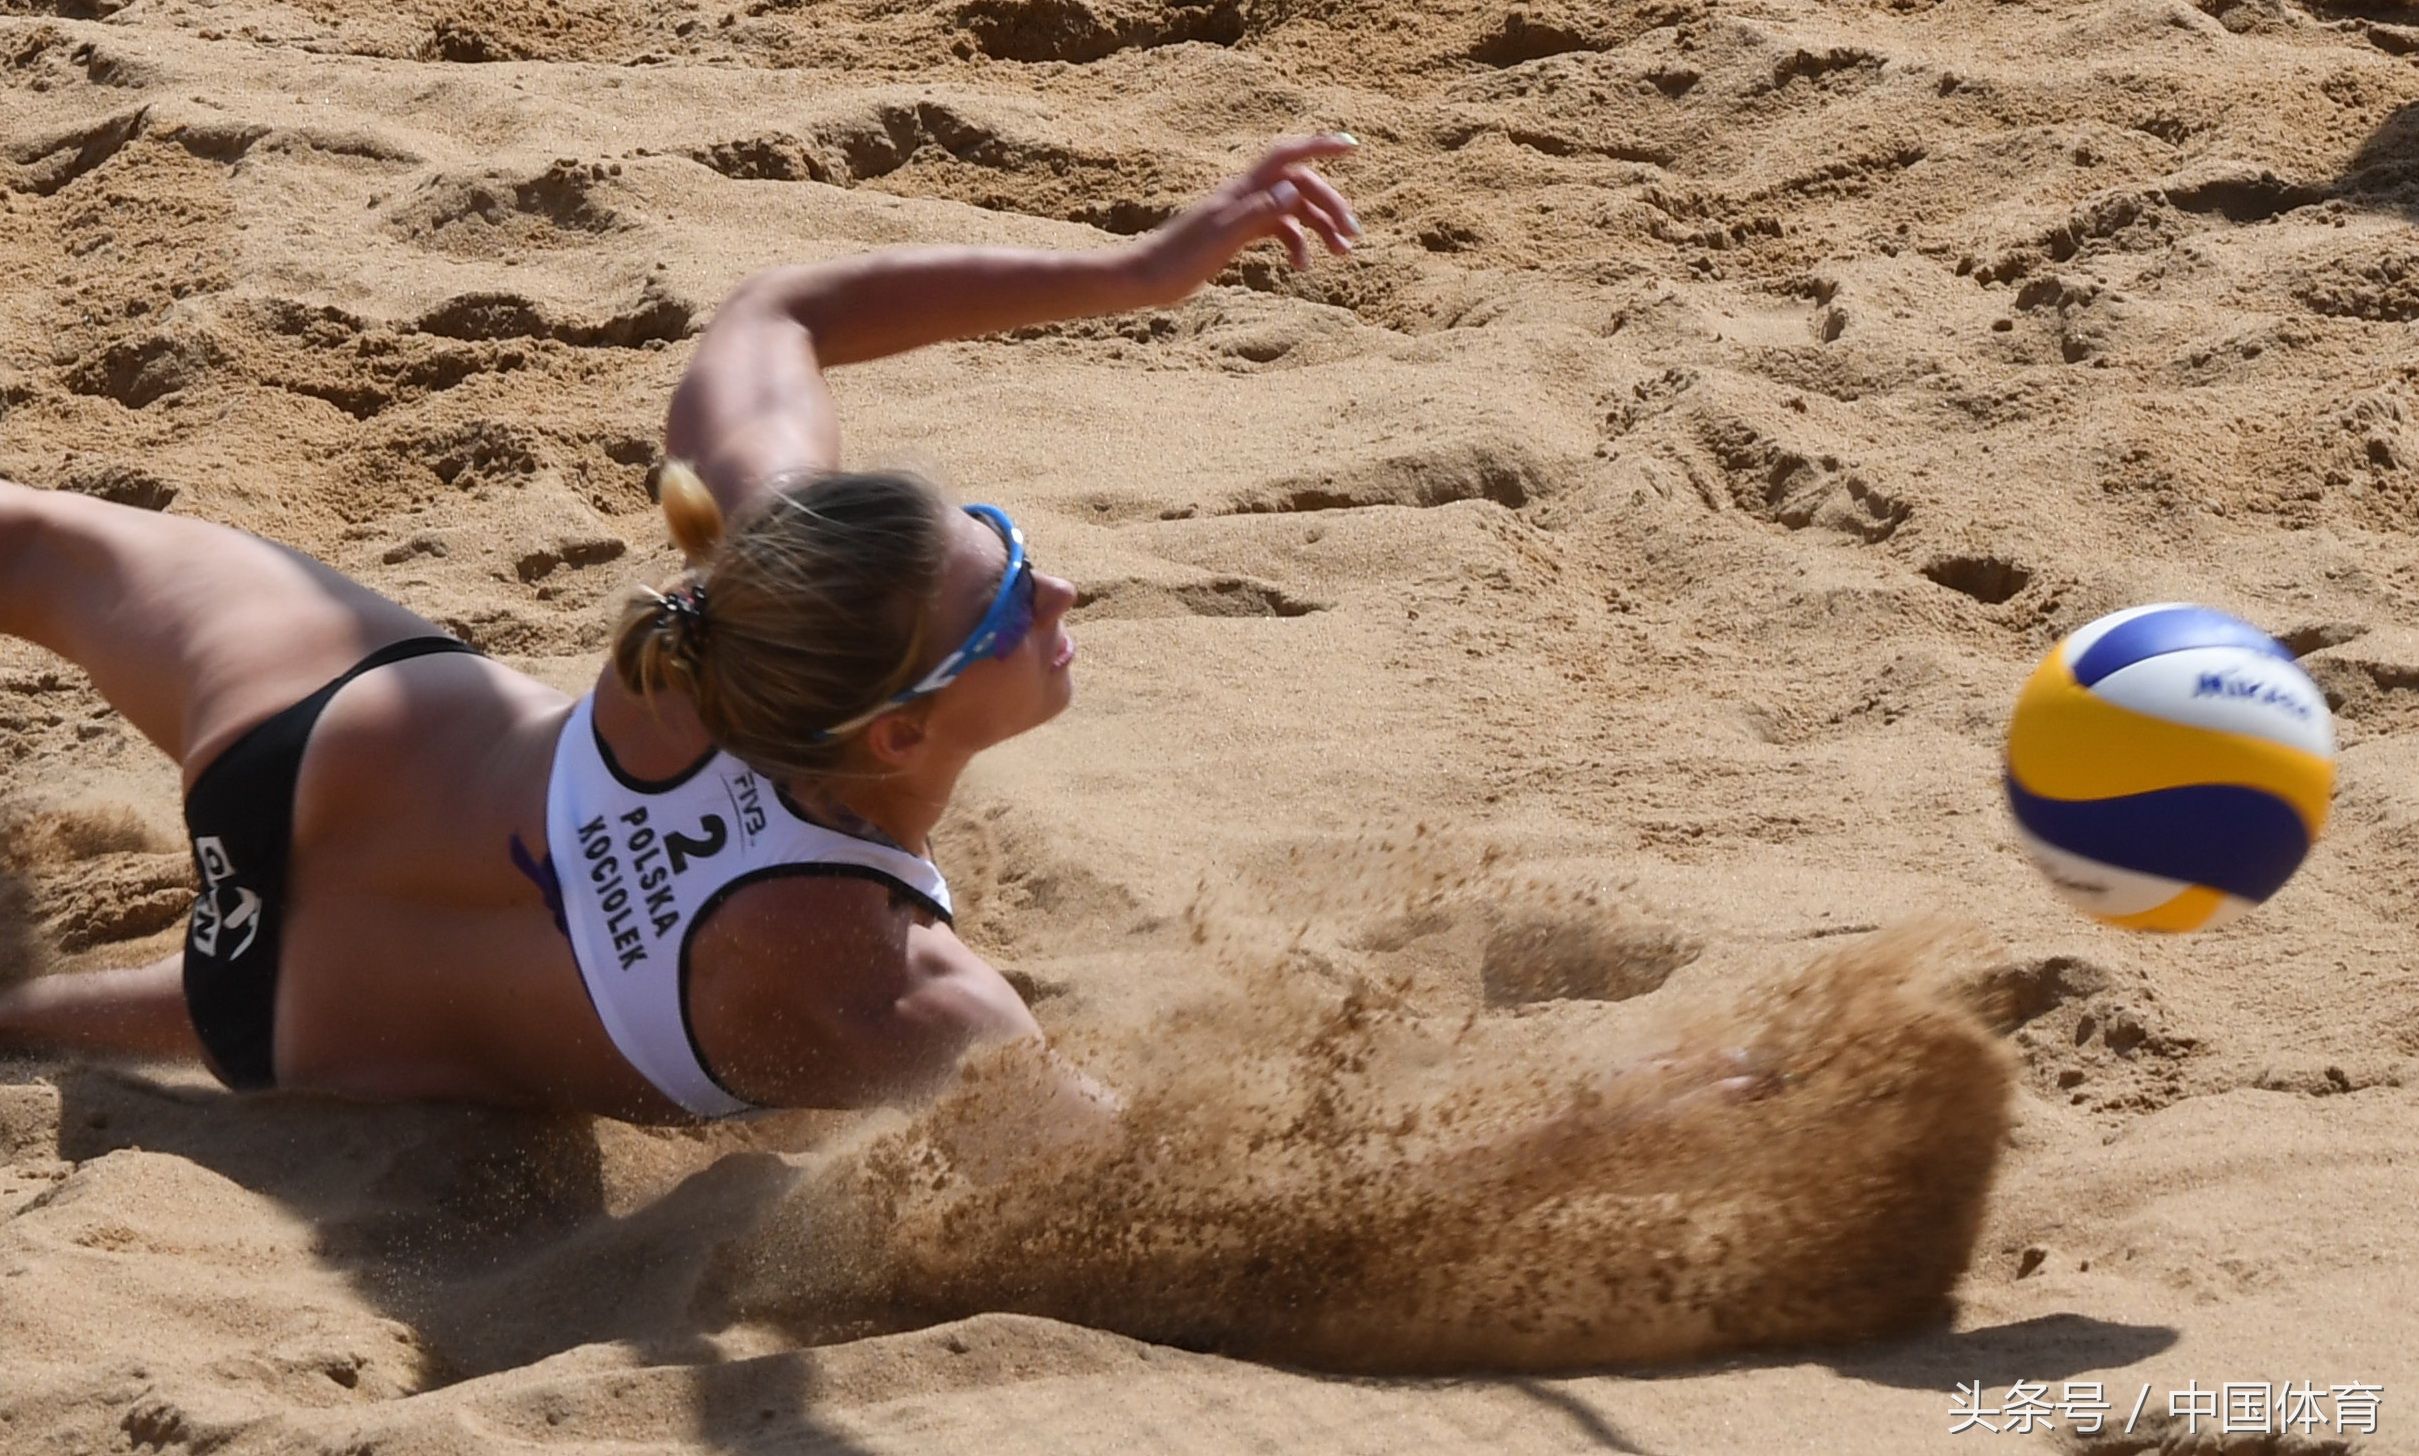 世界沙滩排球巡回赛钦州公开赛女子比赛 澳大